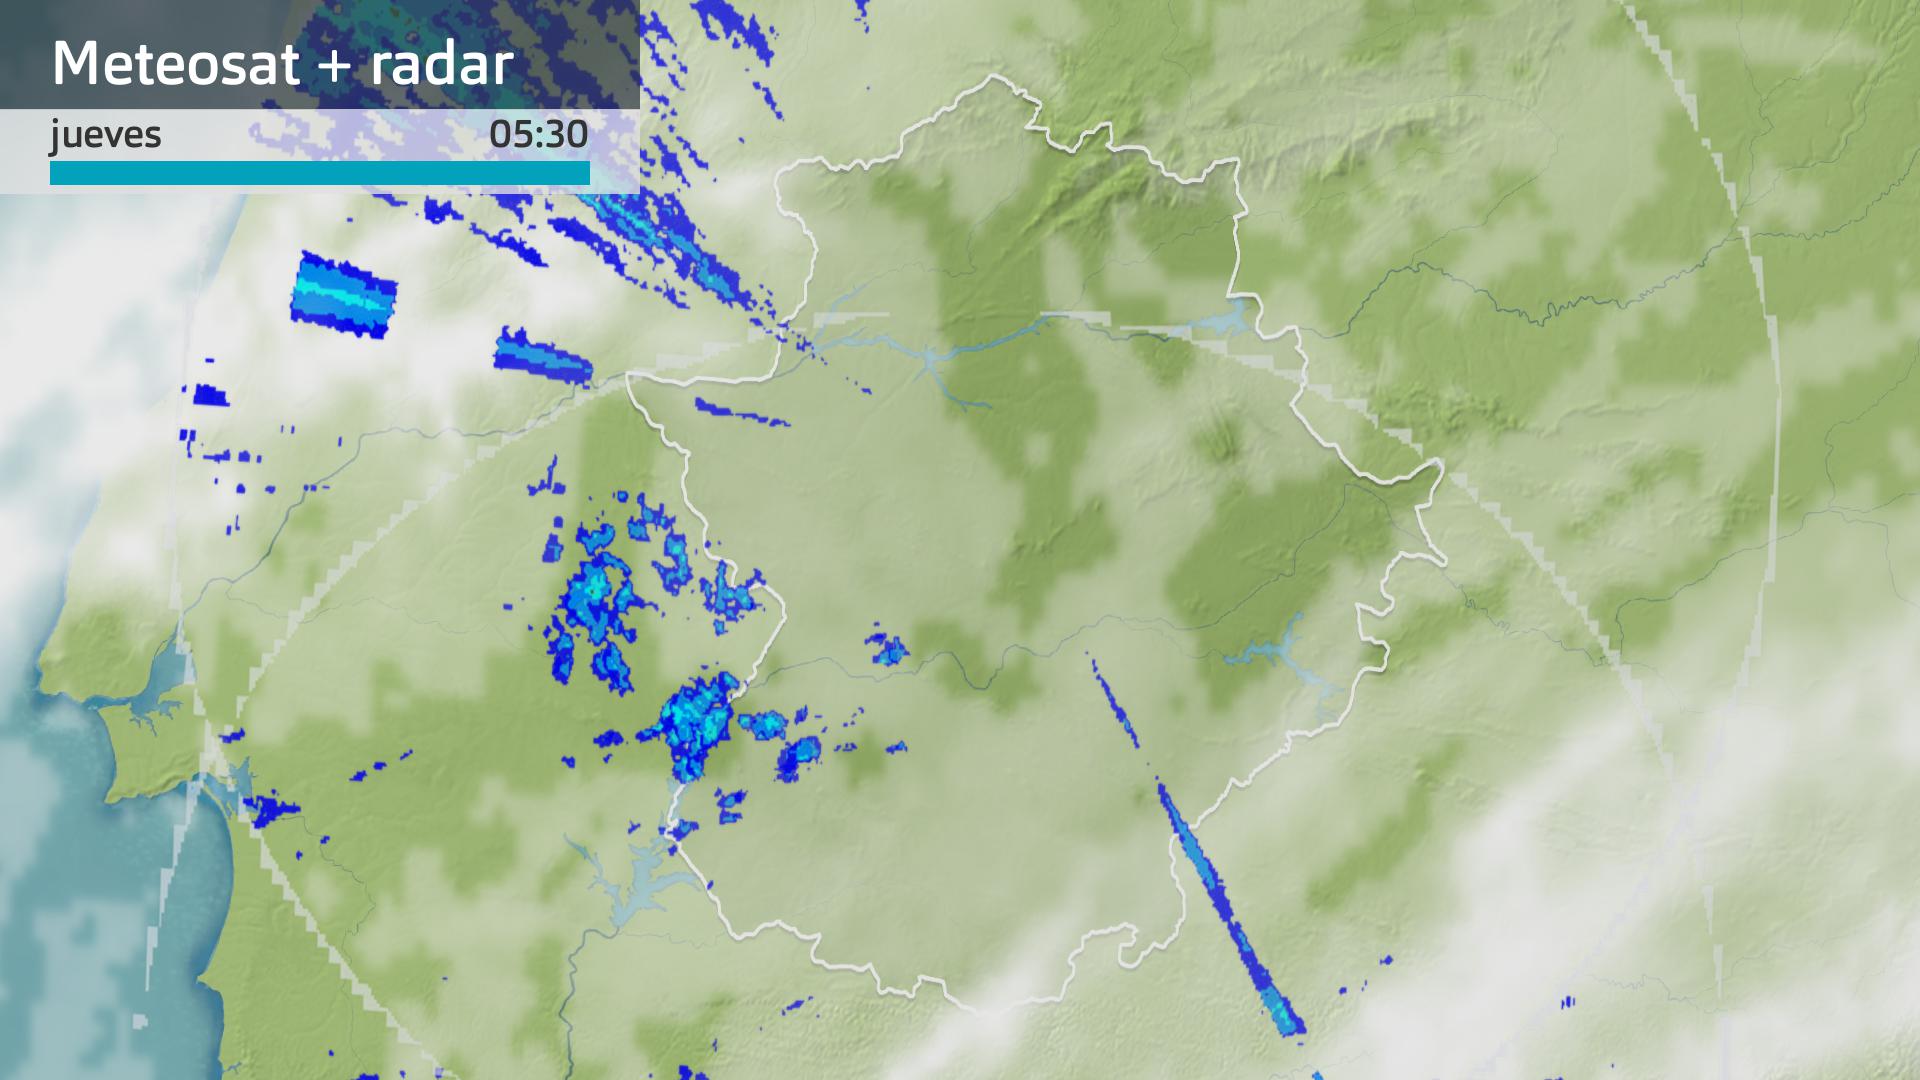 Imagen del Meteosat + radar meteorológico jueves 4 de enero 5:30 h.